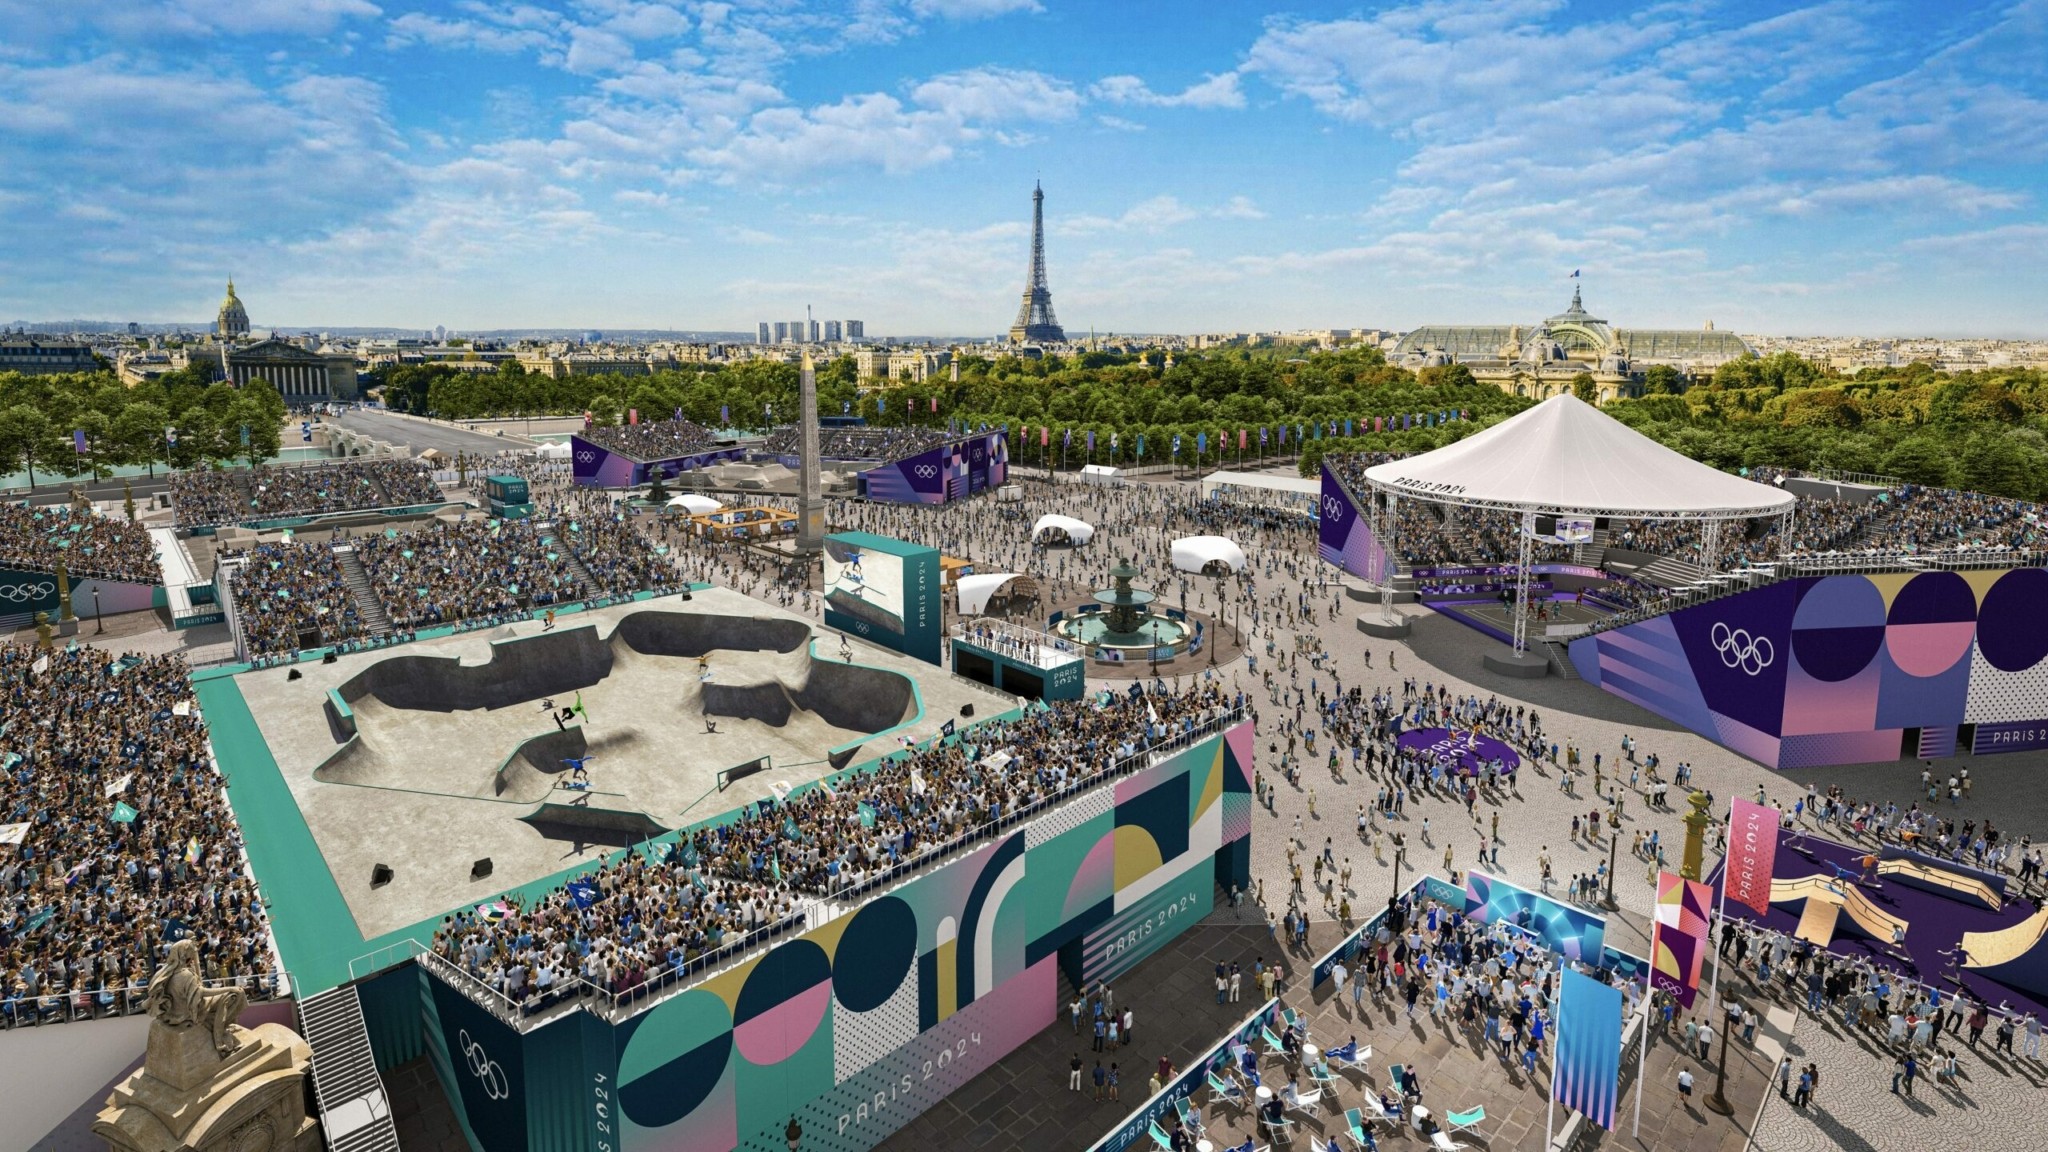 Σε αυτά τα στάδια θα γίνουν οι Ολυμπιακοί Aγώνες στο Παρίσι 